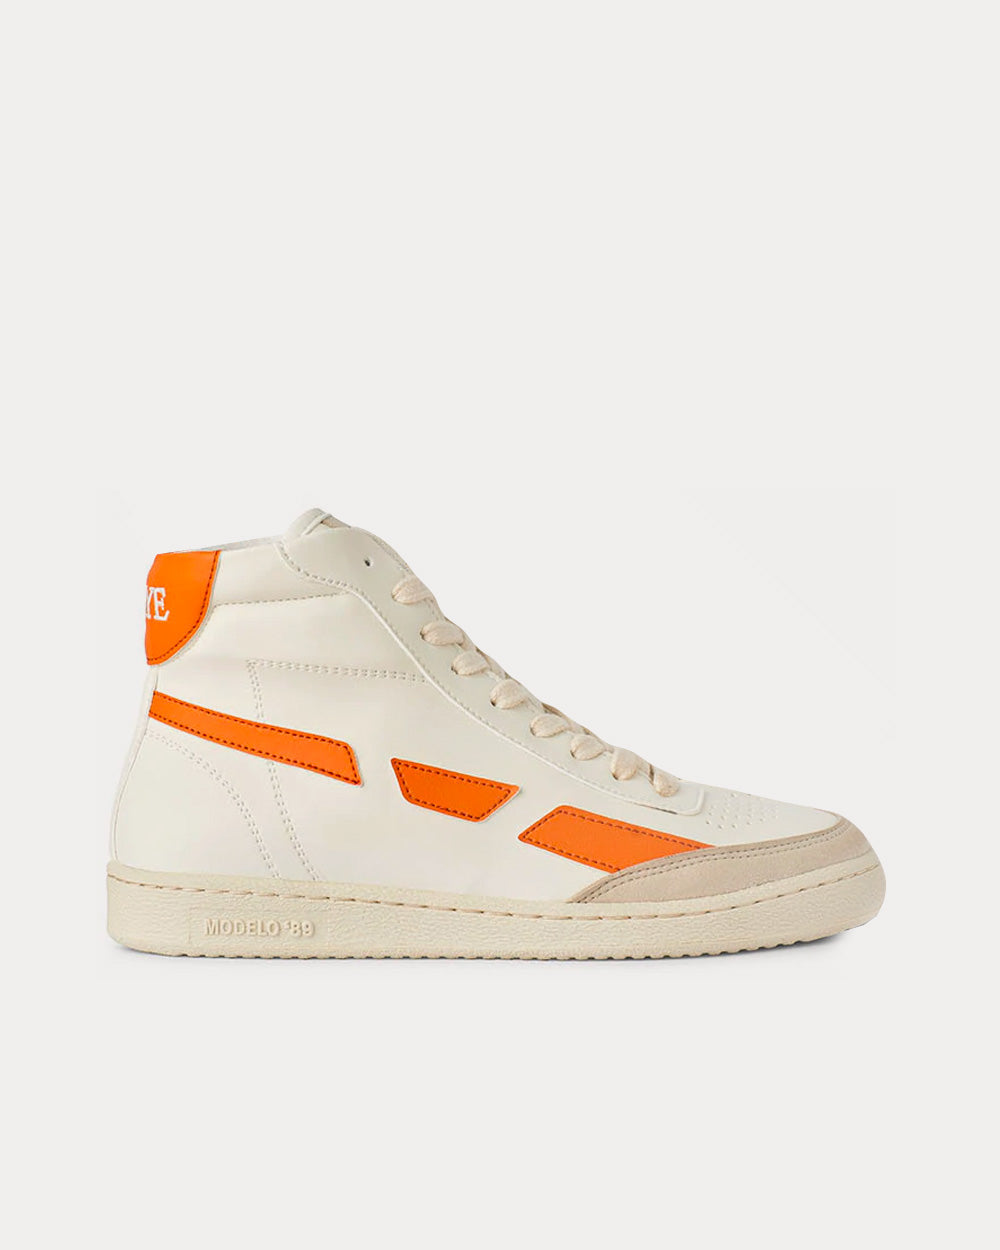 Saye Modelo '89 Vegan Hi Orange High Top Sneakers - Sneak in Peace